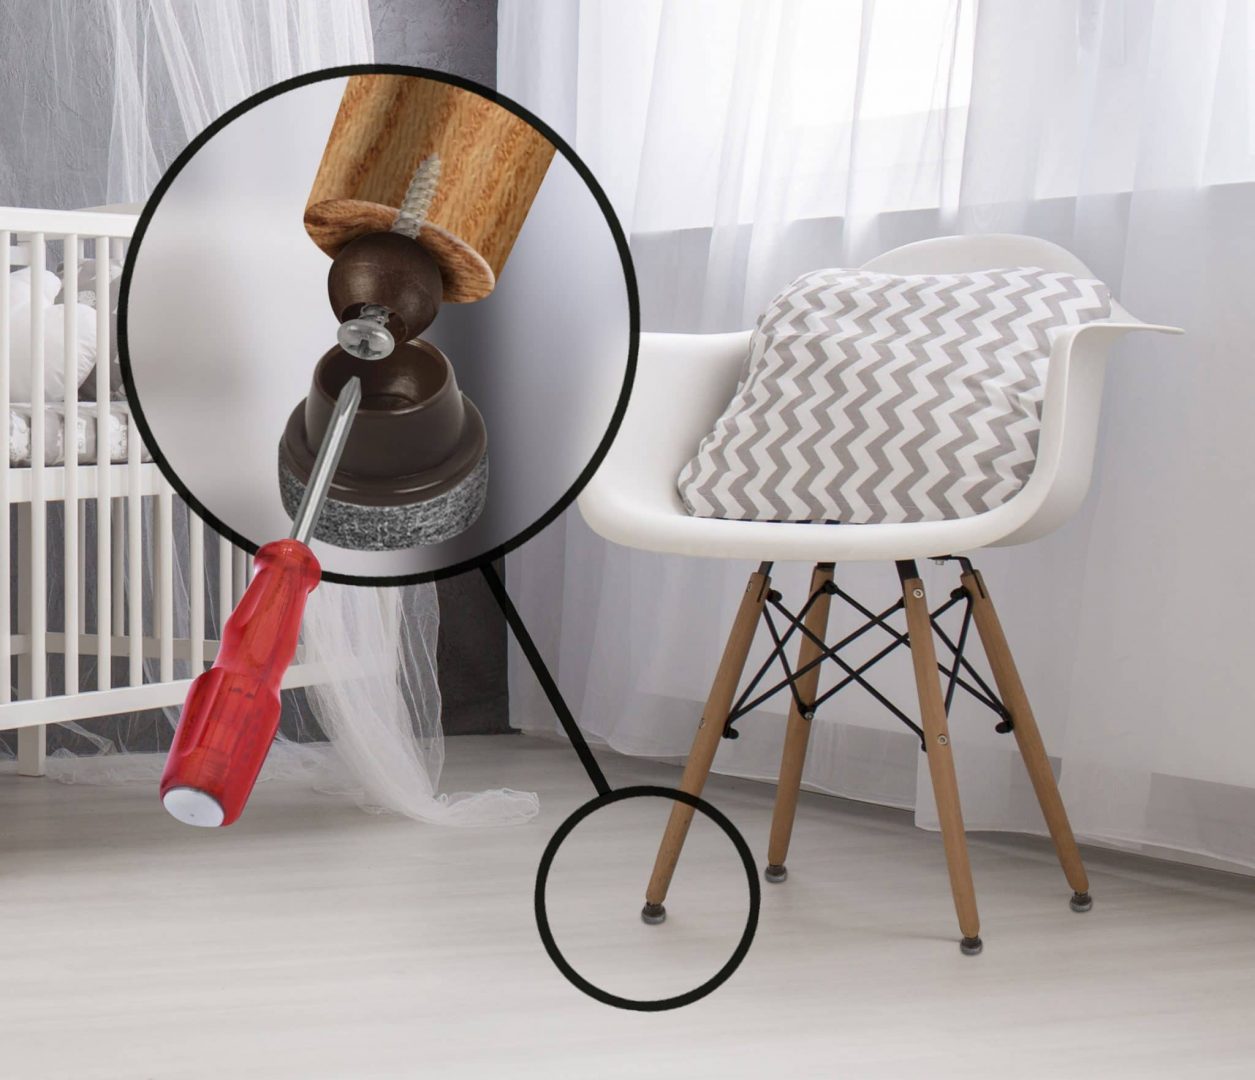 Felt Floor Protectors Swivel 25mm Diameter For Angled Chair Legs